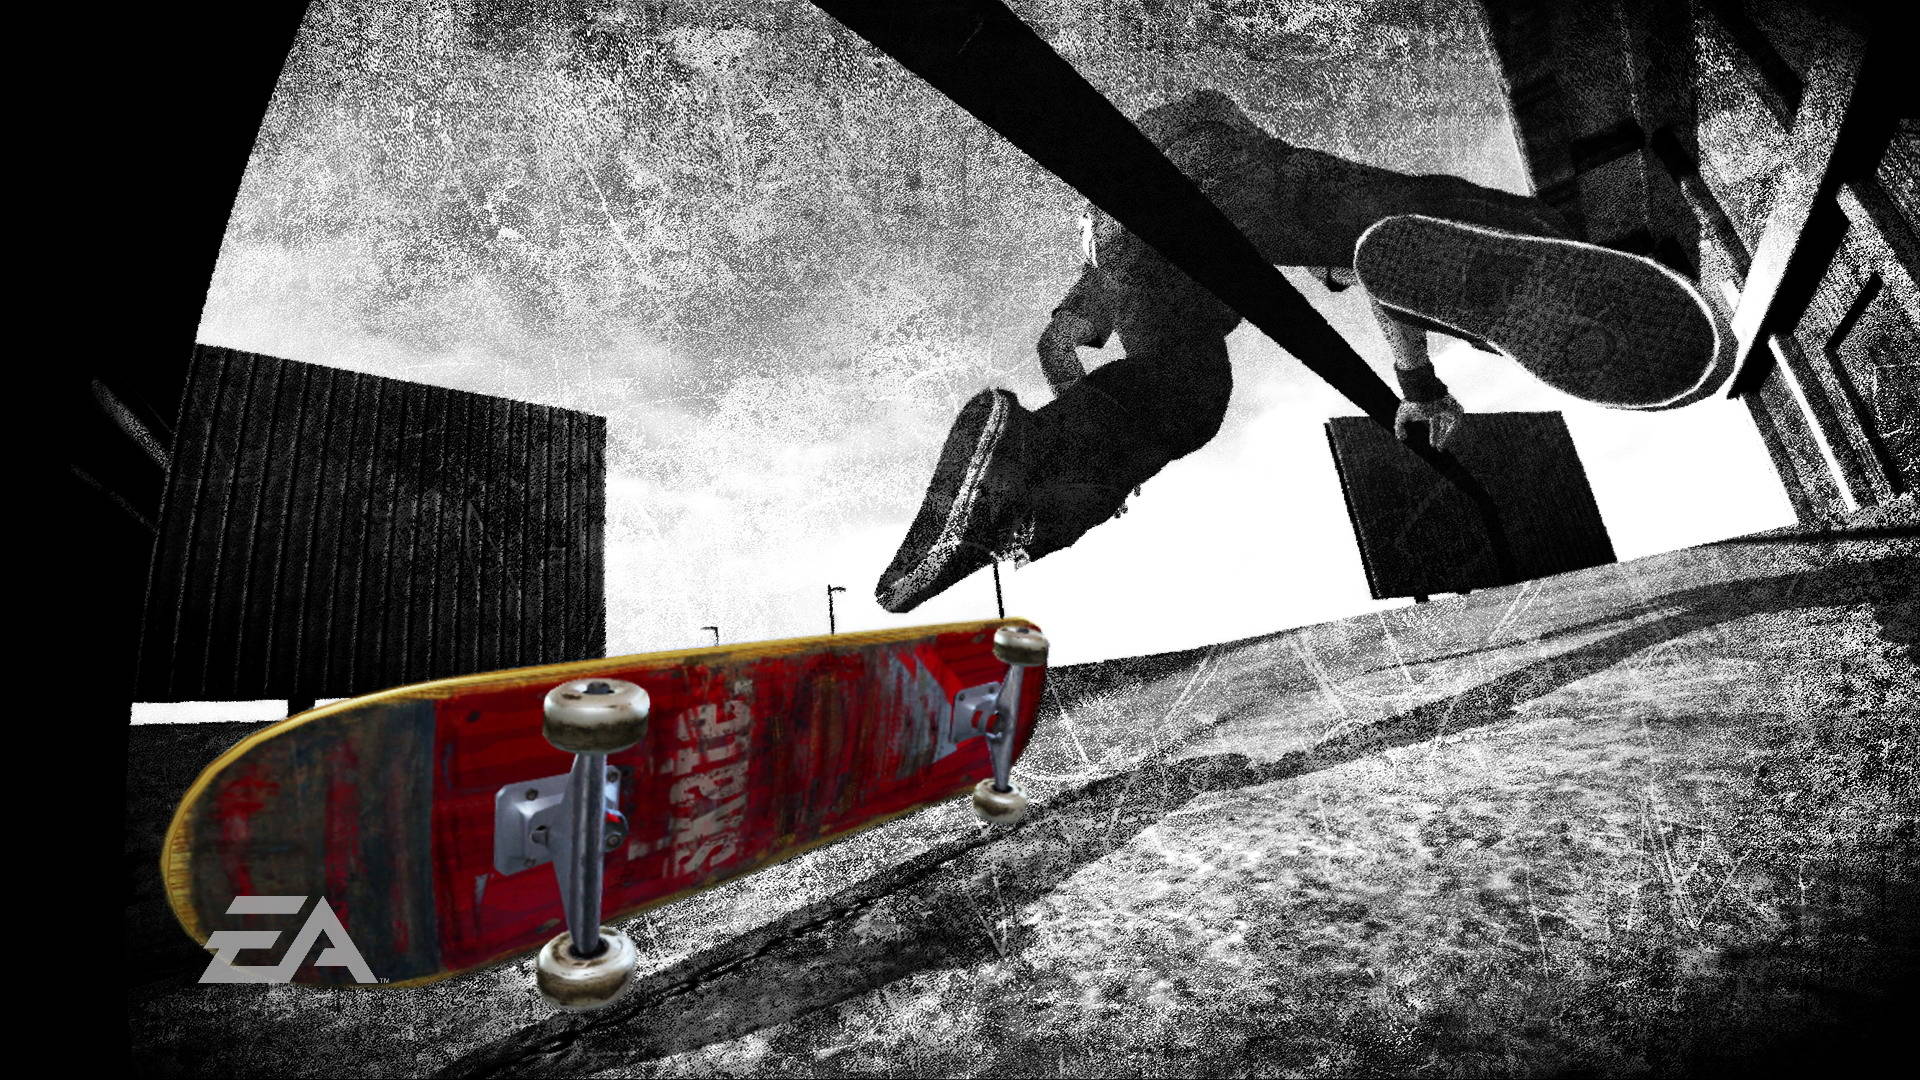 Street Skateboarding Wallpaper for Desktop